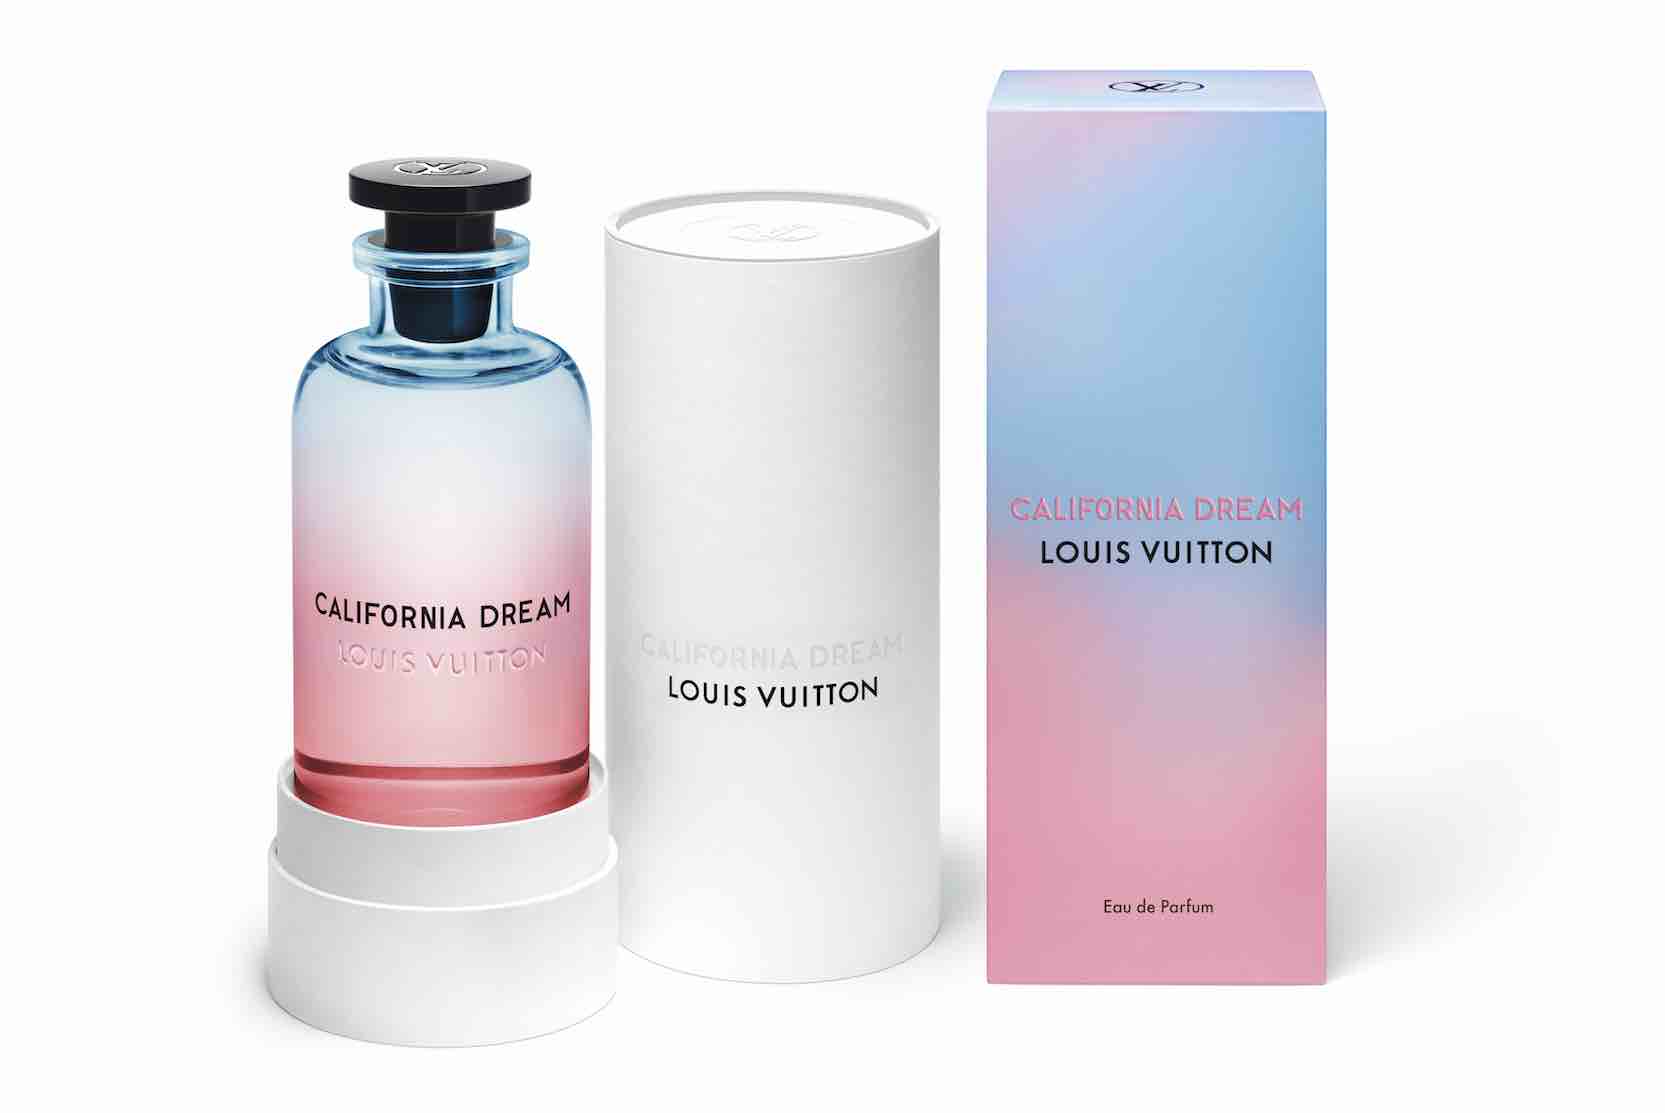 California Dream, le nouveau parfum de cologne de Louis Vuitton | literacybasics.ca